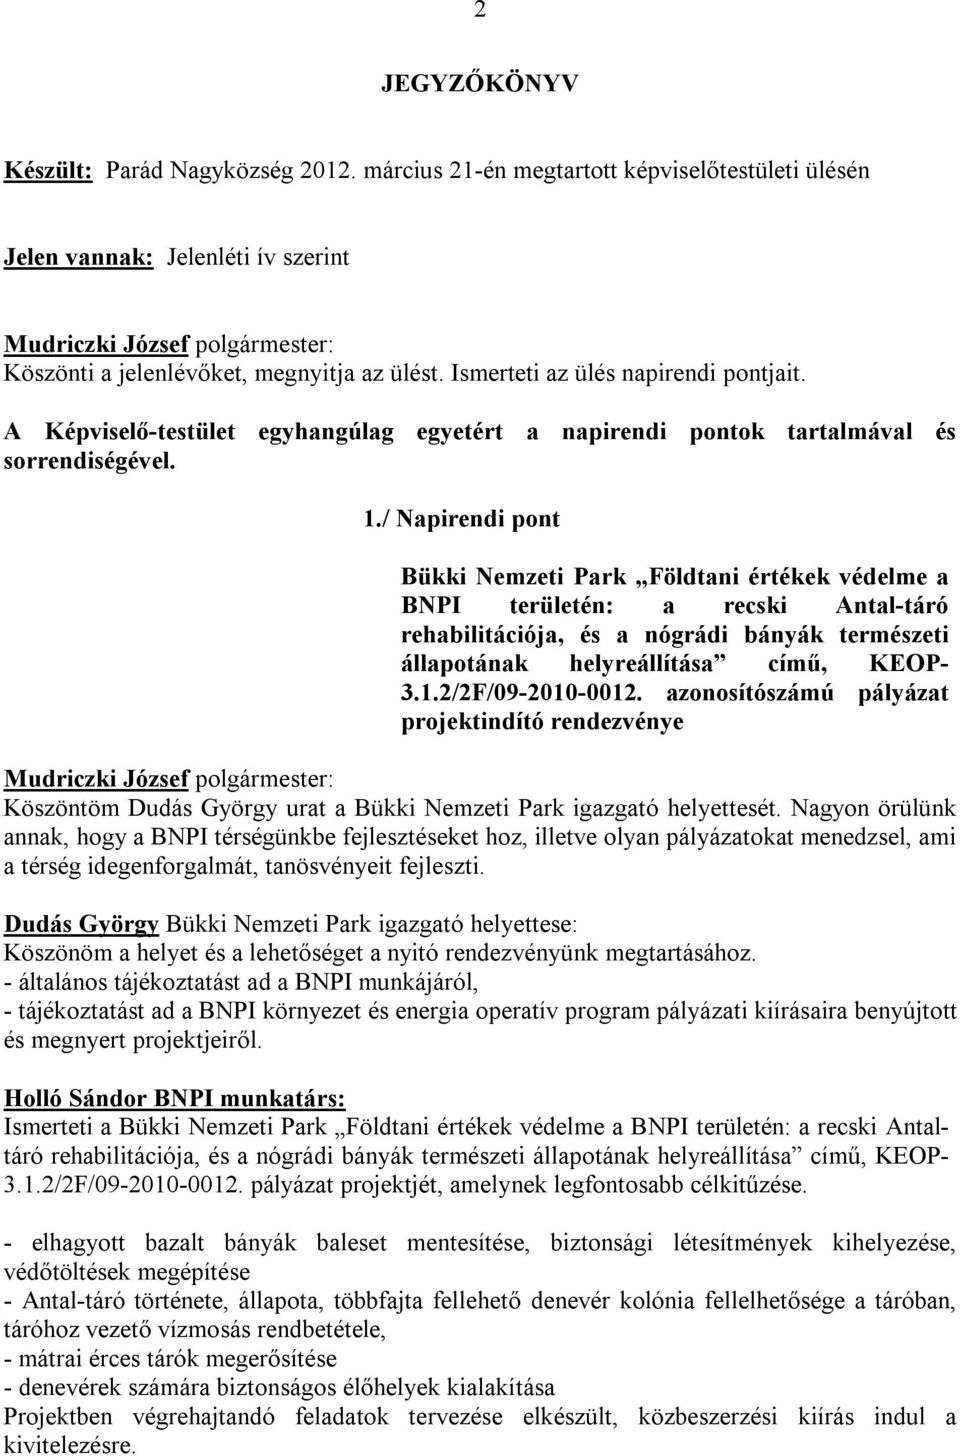 / Napirendi pont Bükki Nemzeti Park Földtani értékek védelme a BNPI területén: a recski Antal-táró rehabilitációja, és a nógrádi bányák természeti állapotának helyreállítása című, KEOP- 3.1.